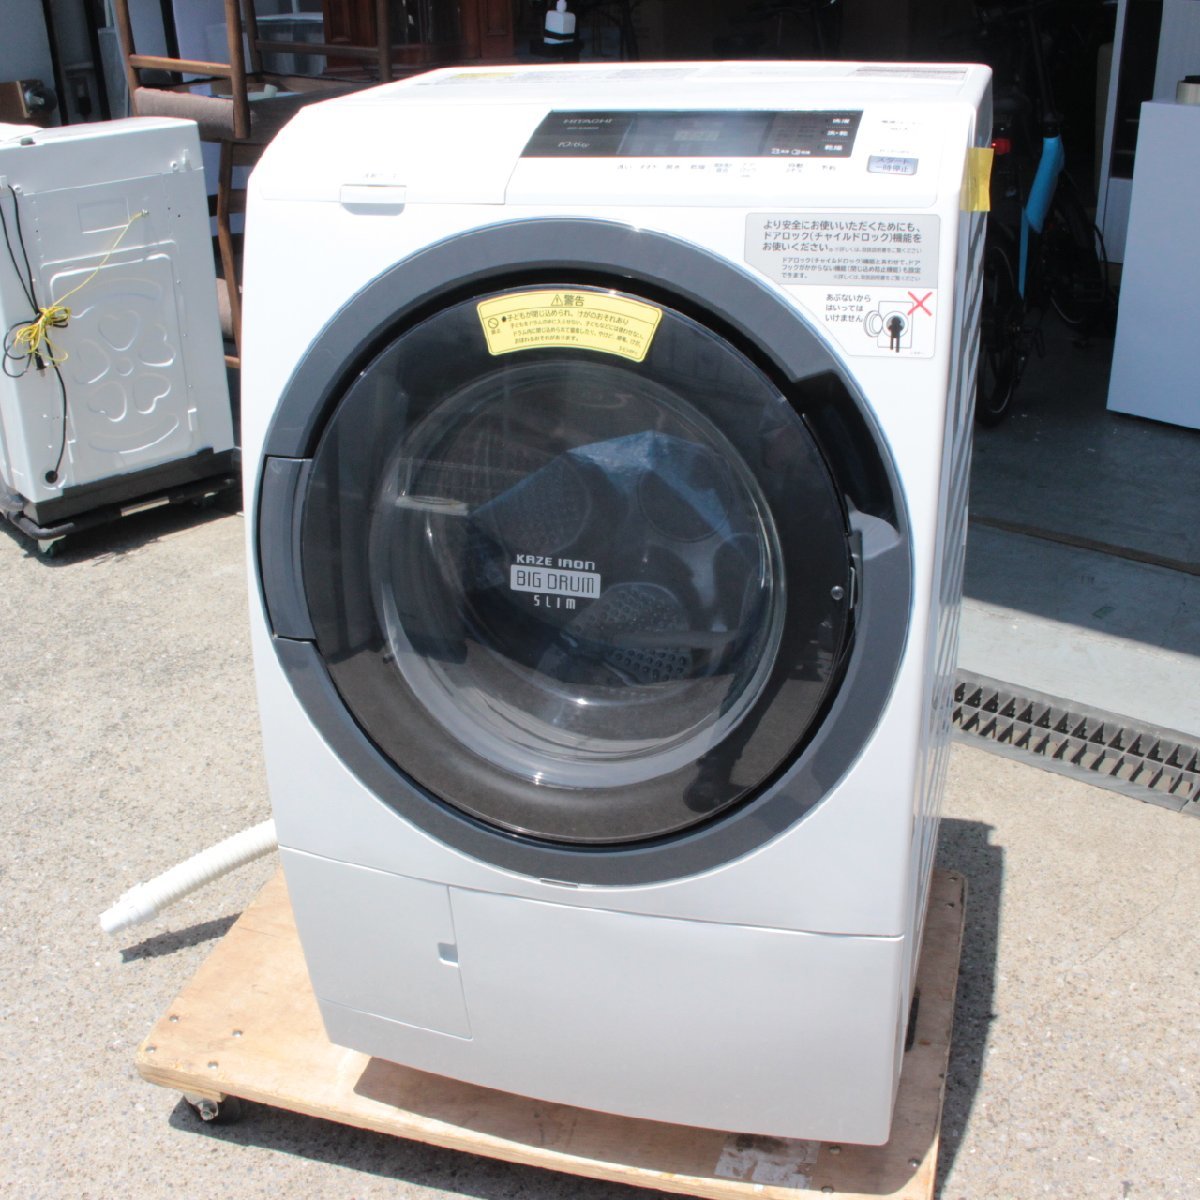 東京都武蔵野市にて 日立 ドラム式洗濯機 BD-S3800L 2016年製 を出張買取させて頂きました。